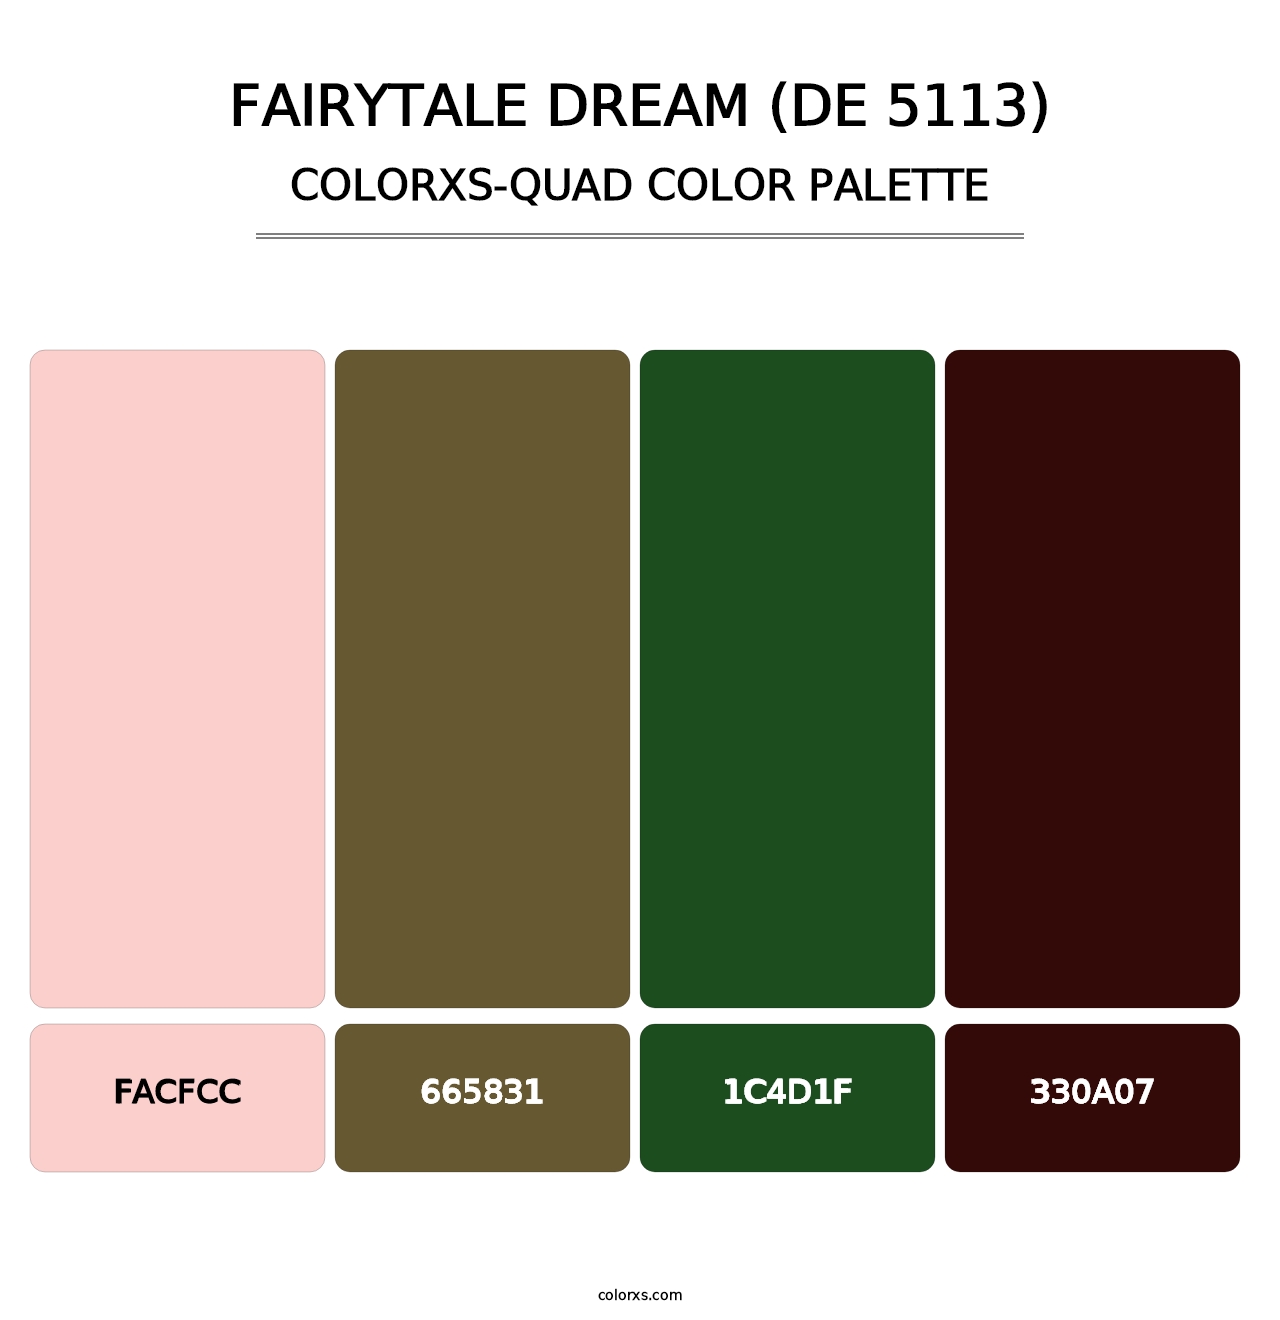 Fairytale Dream (DE 5113) - Colorxs Quad Palette